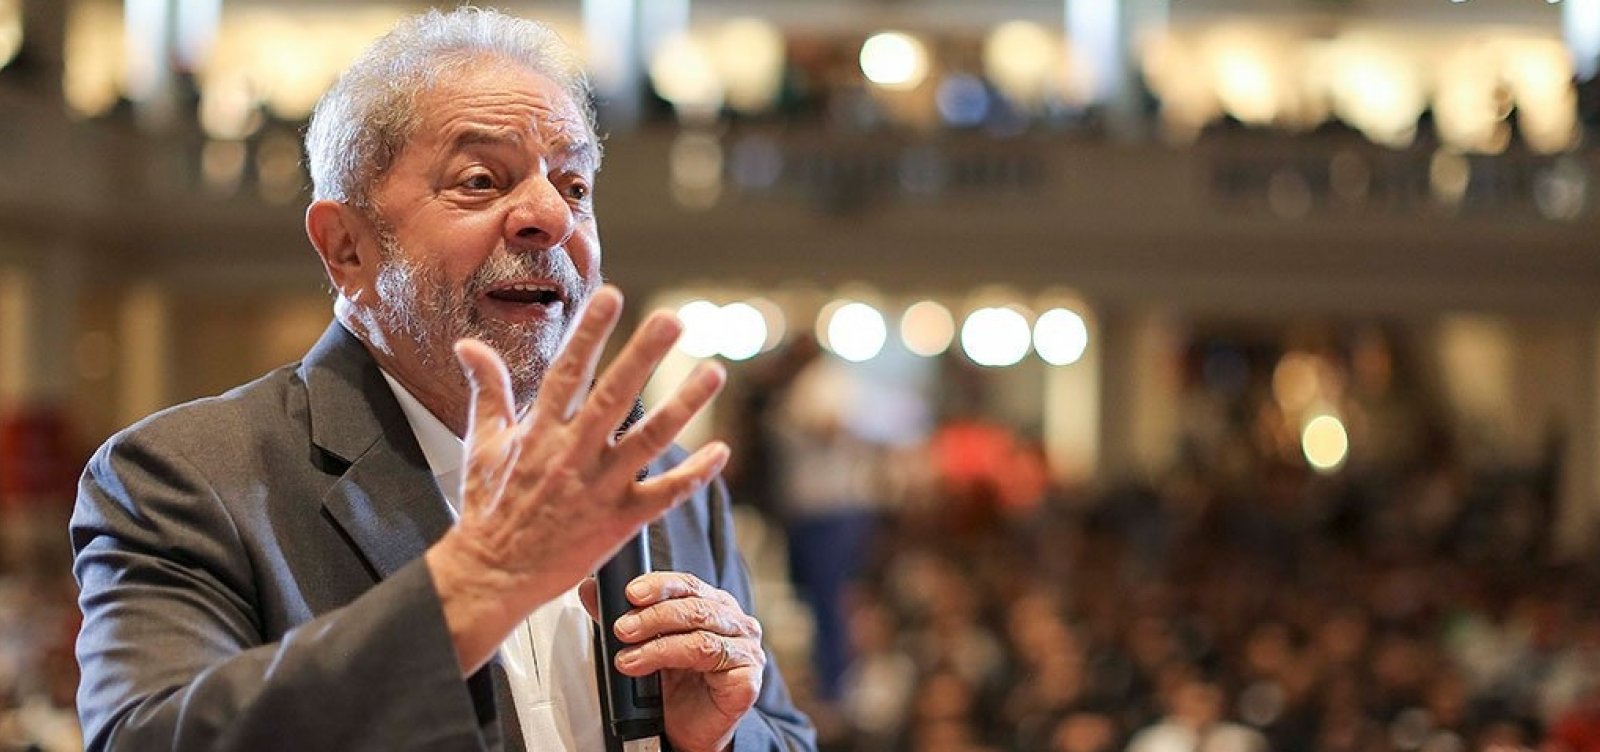 Preso, Lula já recebeu mais de 12 mil cartas de apoio